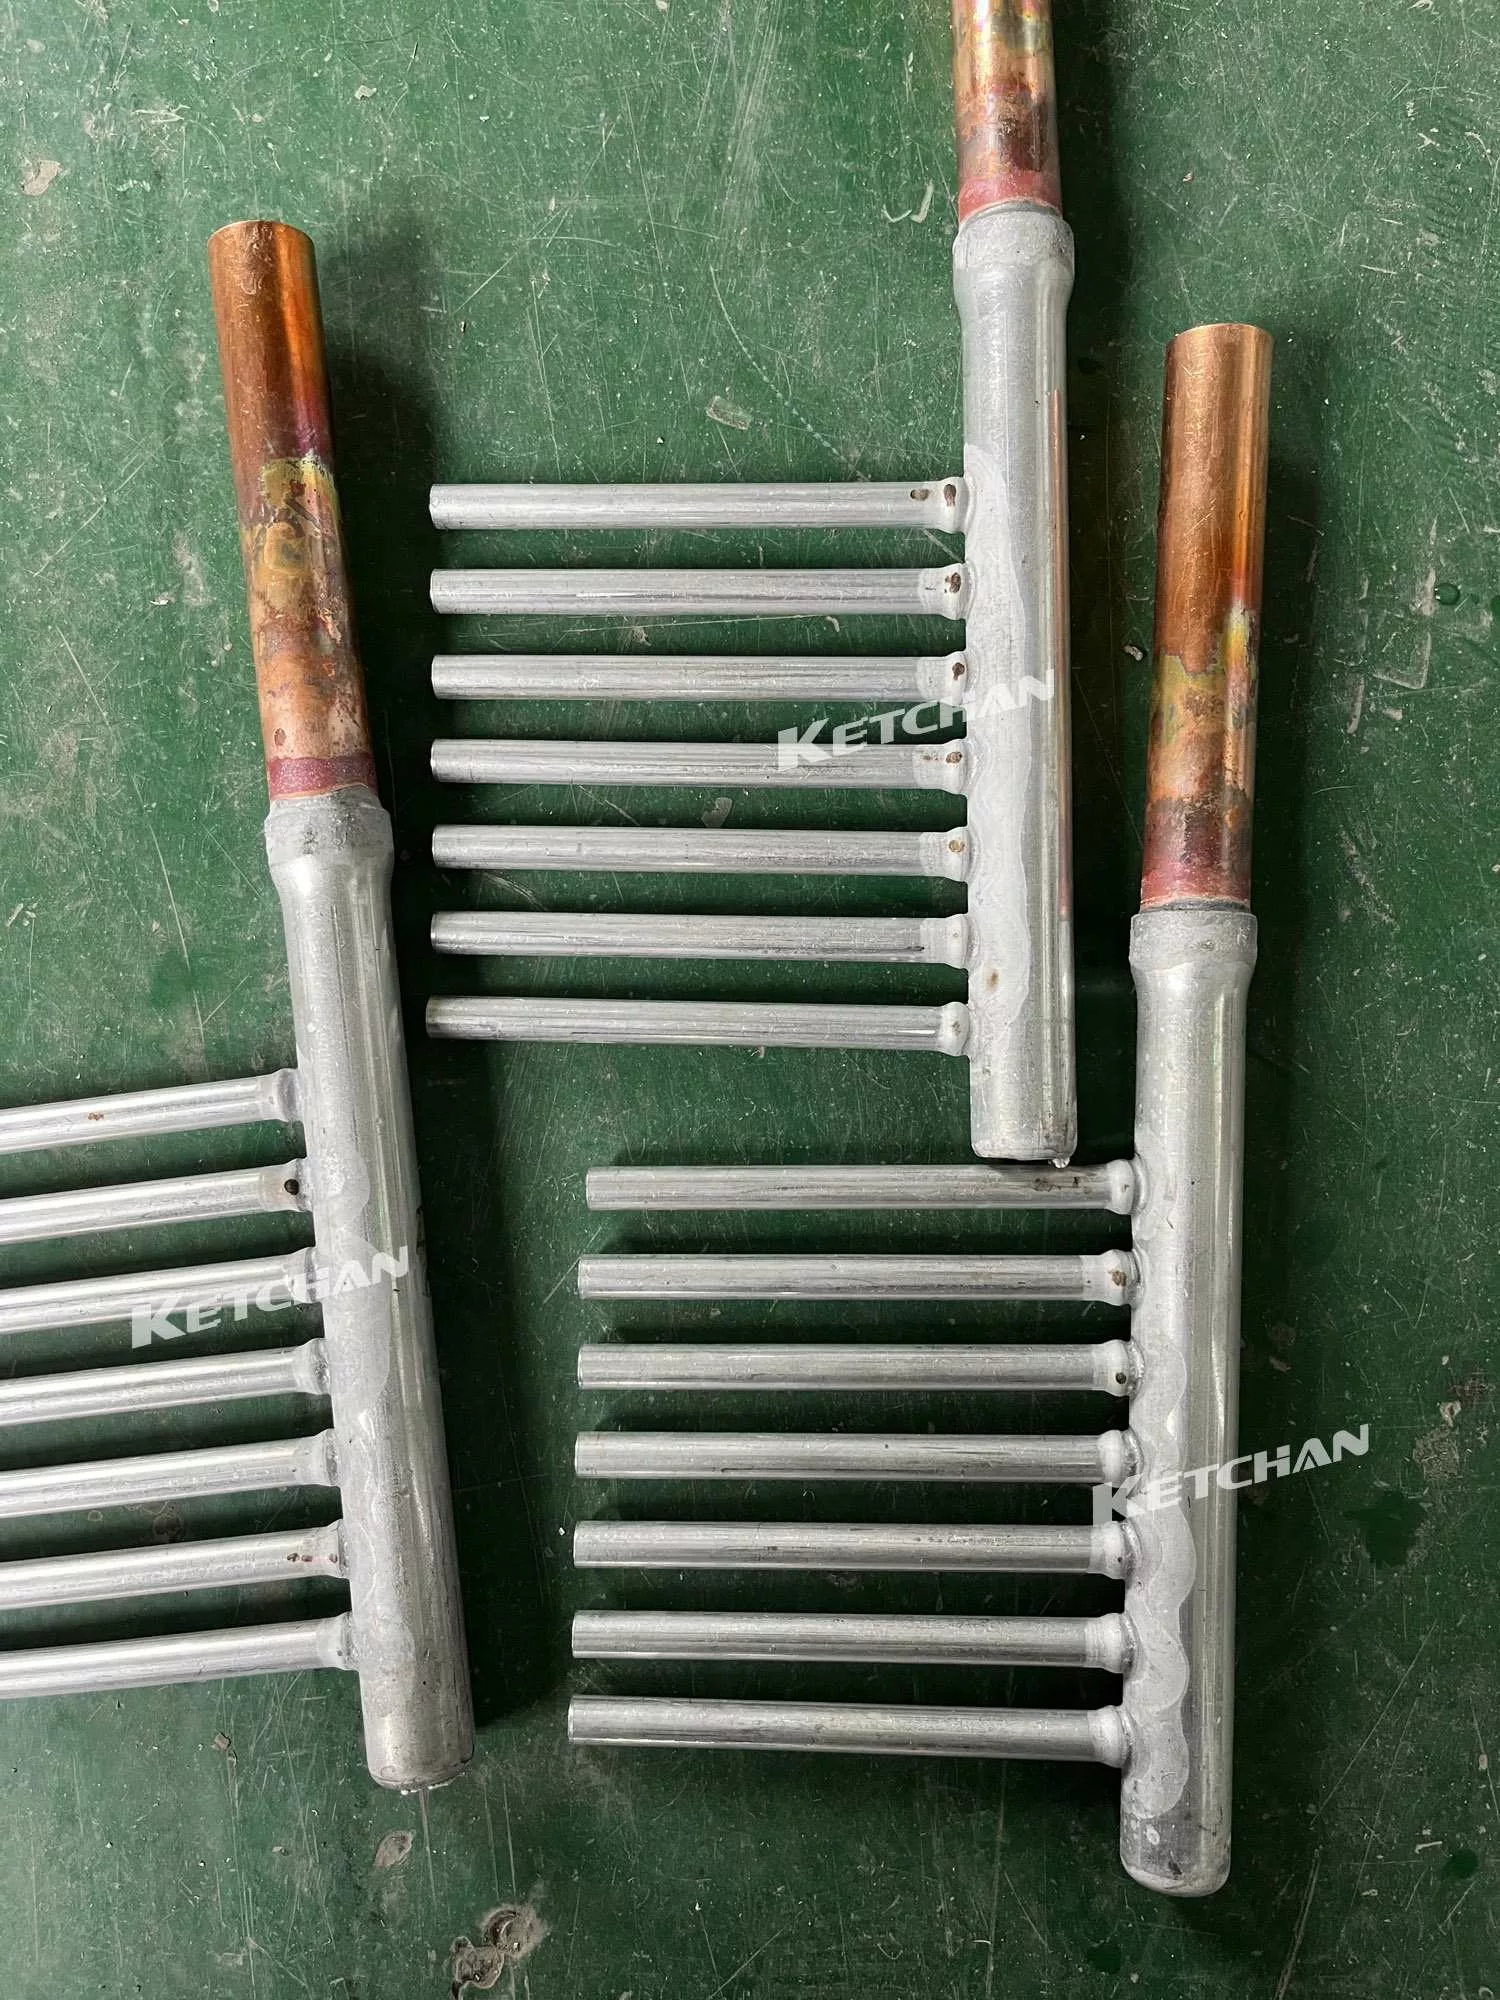 Inductio brazing aluminum manifold tube (2)